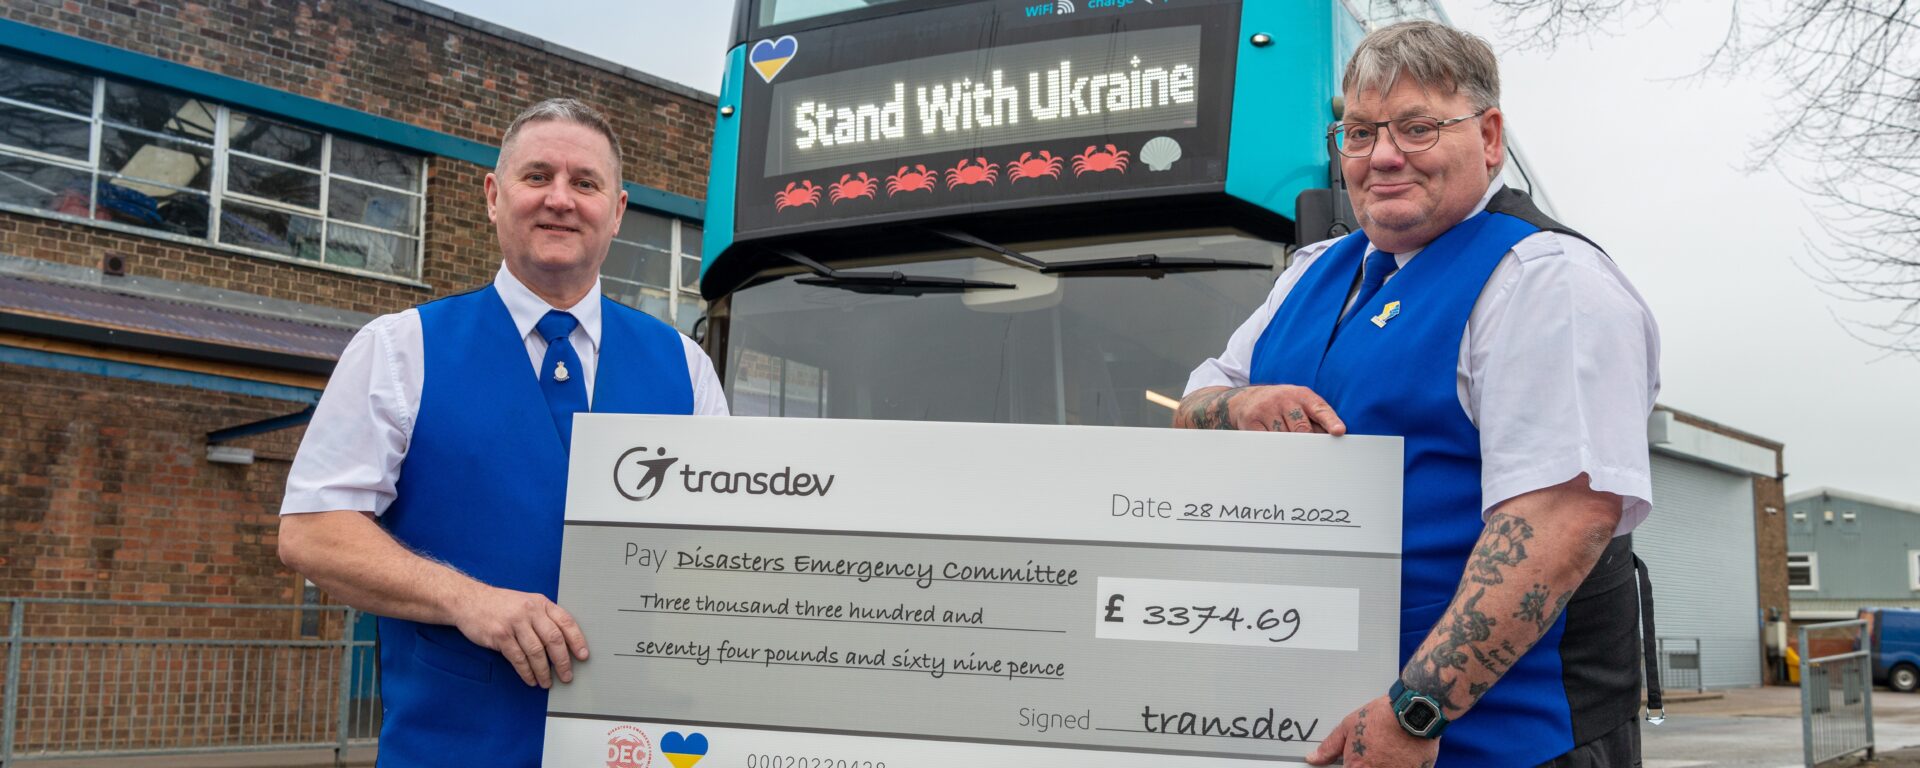 2 employés de Transdev UK en uniforme se tiennent debout devant un bus à 2 étages bleu, et brandissent un chèque géant avec de montant des sommes récoltées pour soutenir l'Ukraine